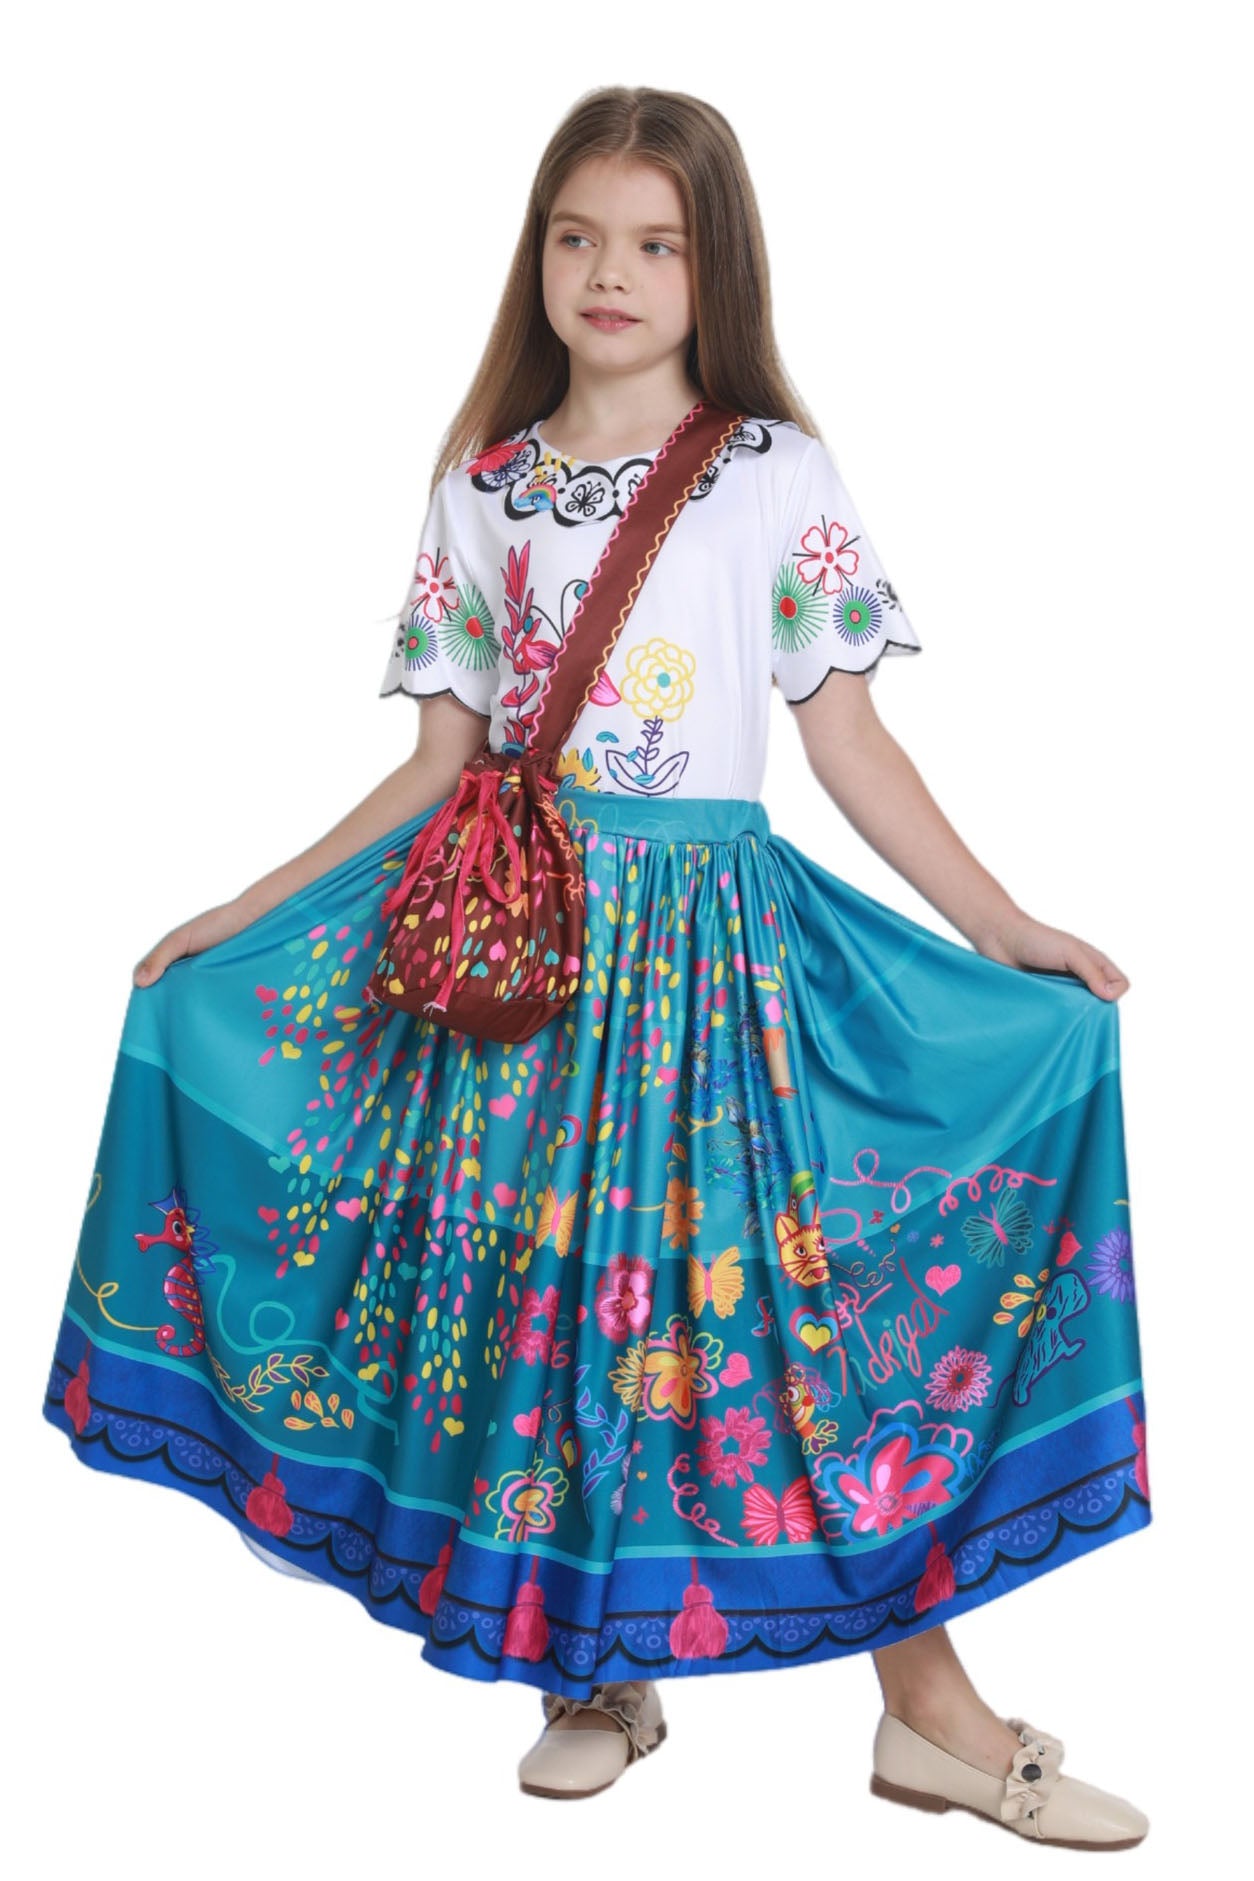 Encanto Mirabel Costume for Girls